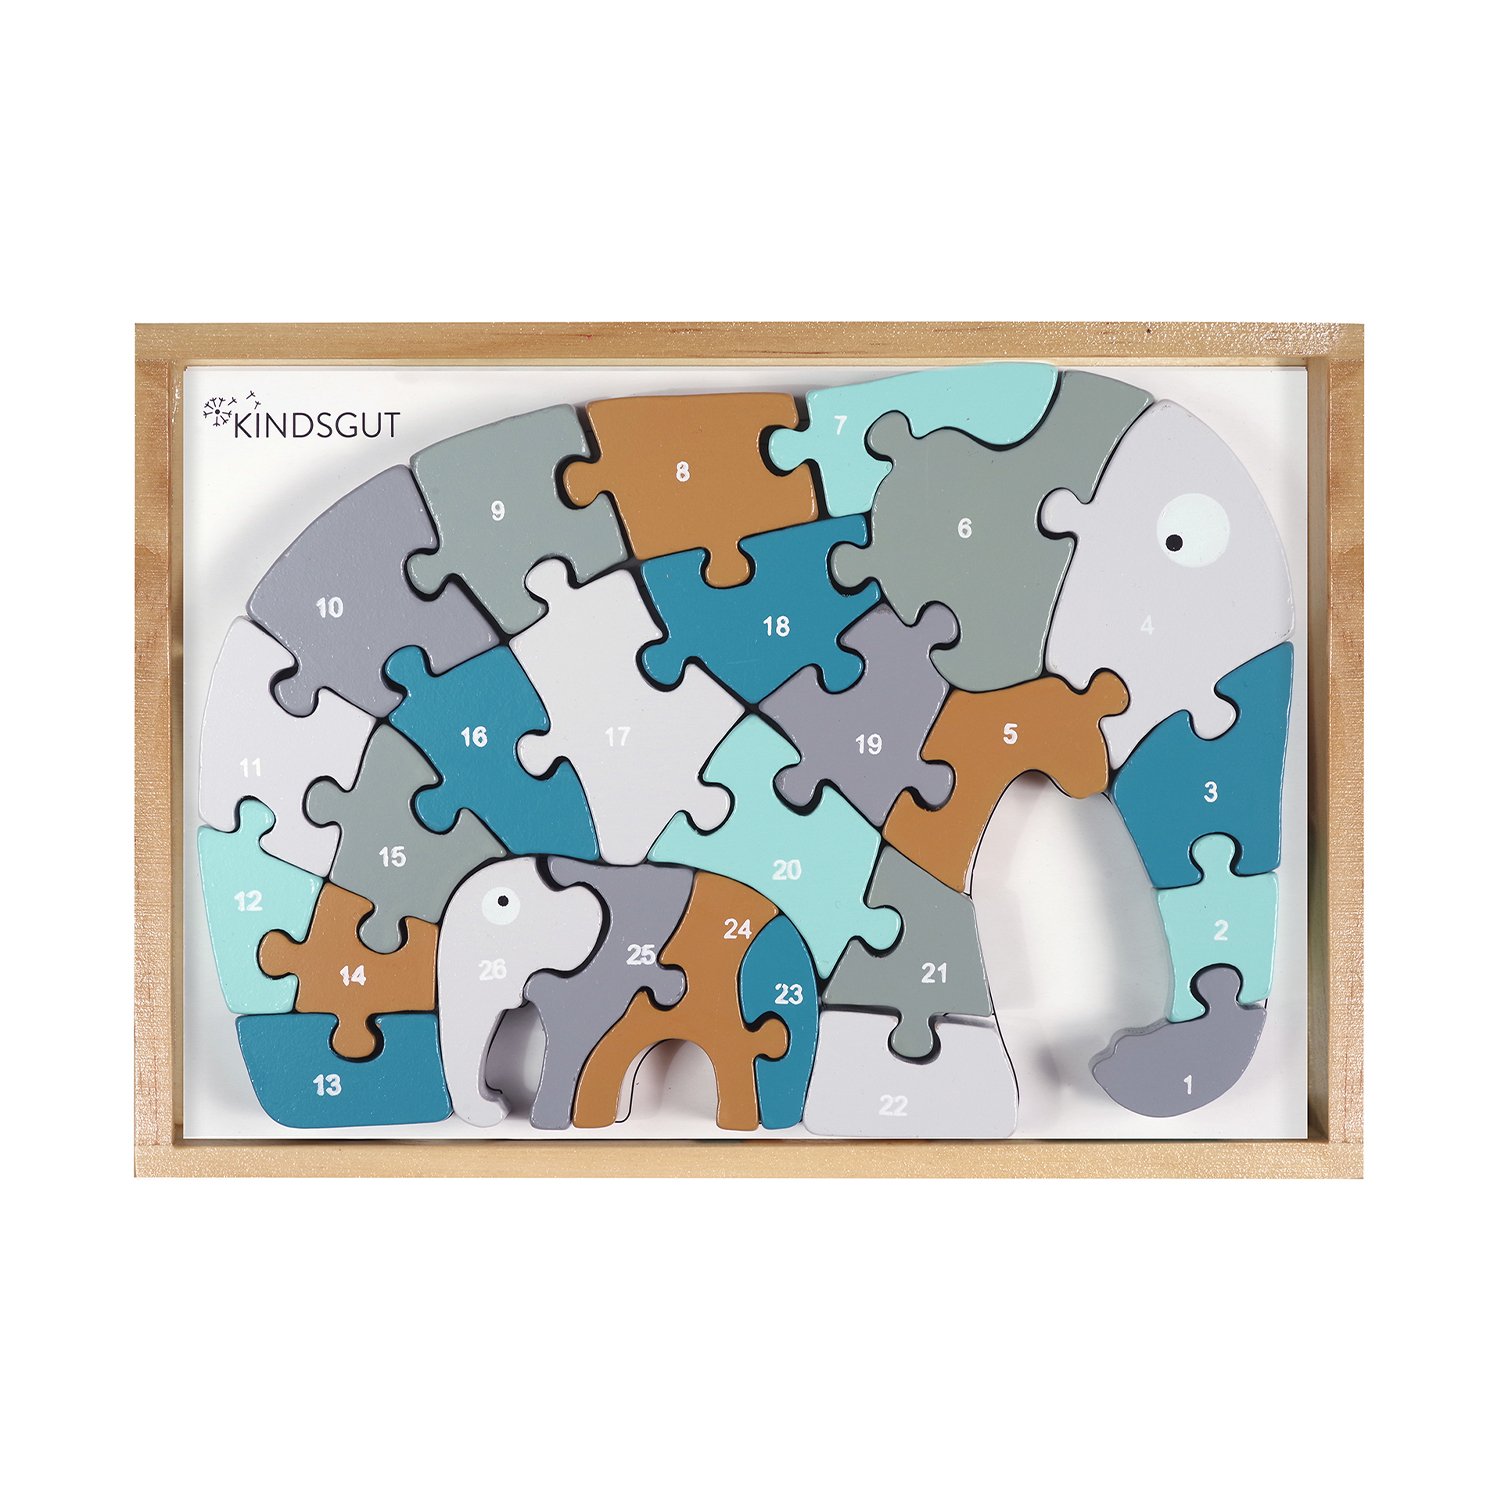 Puzzle lettre elephant en bois